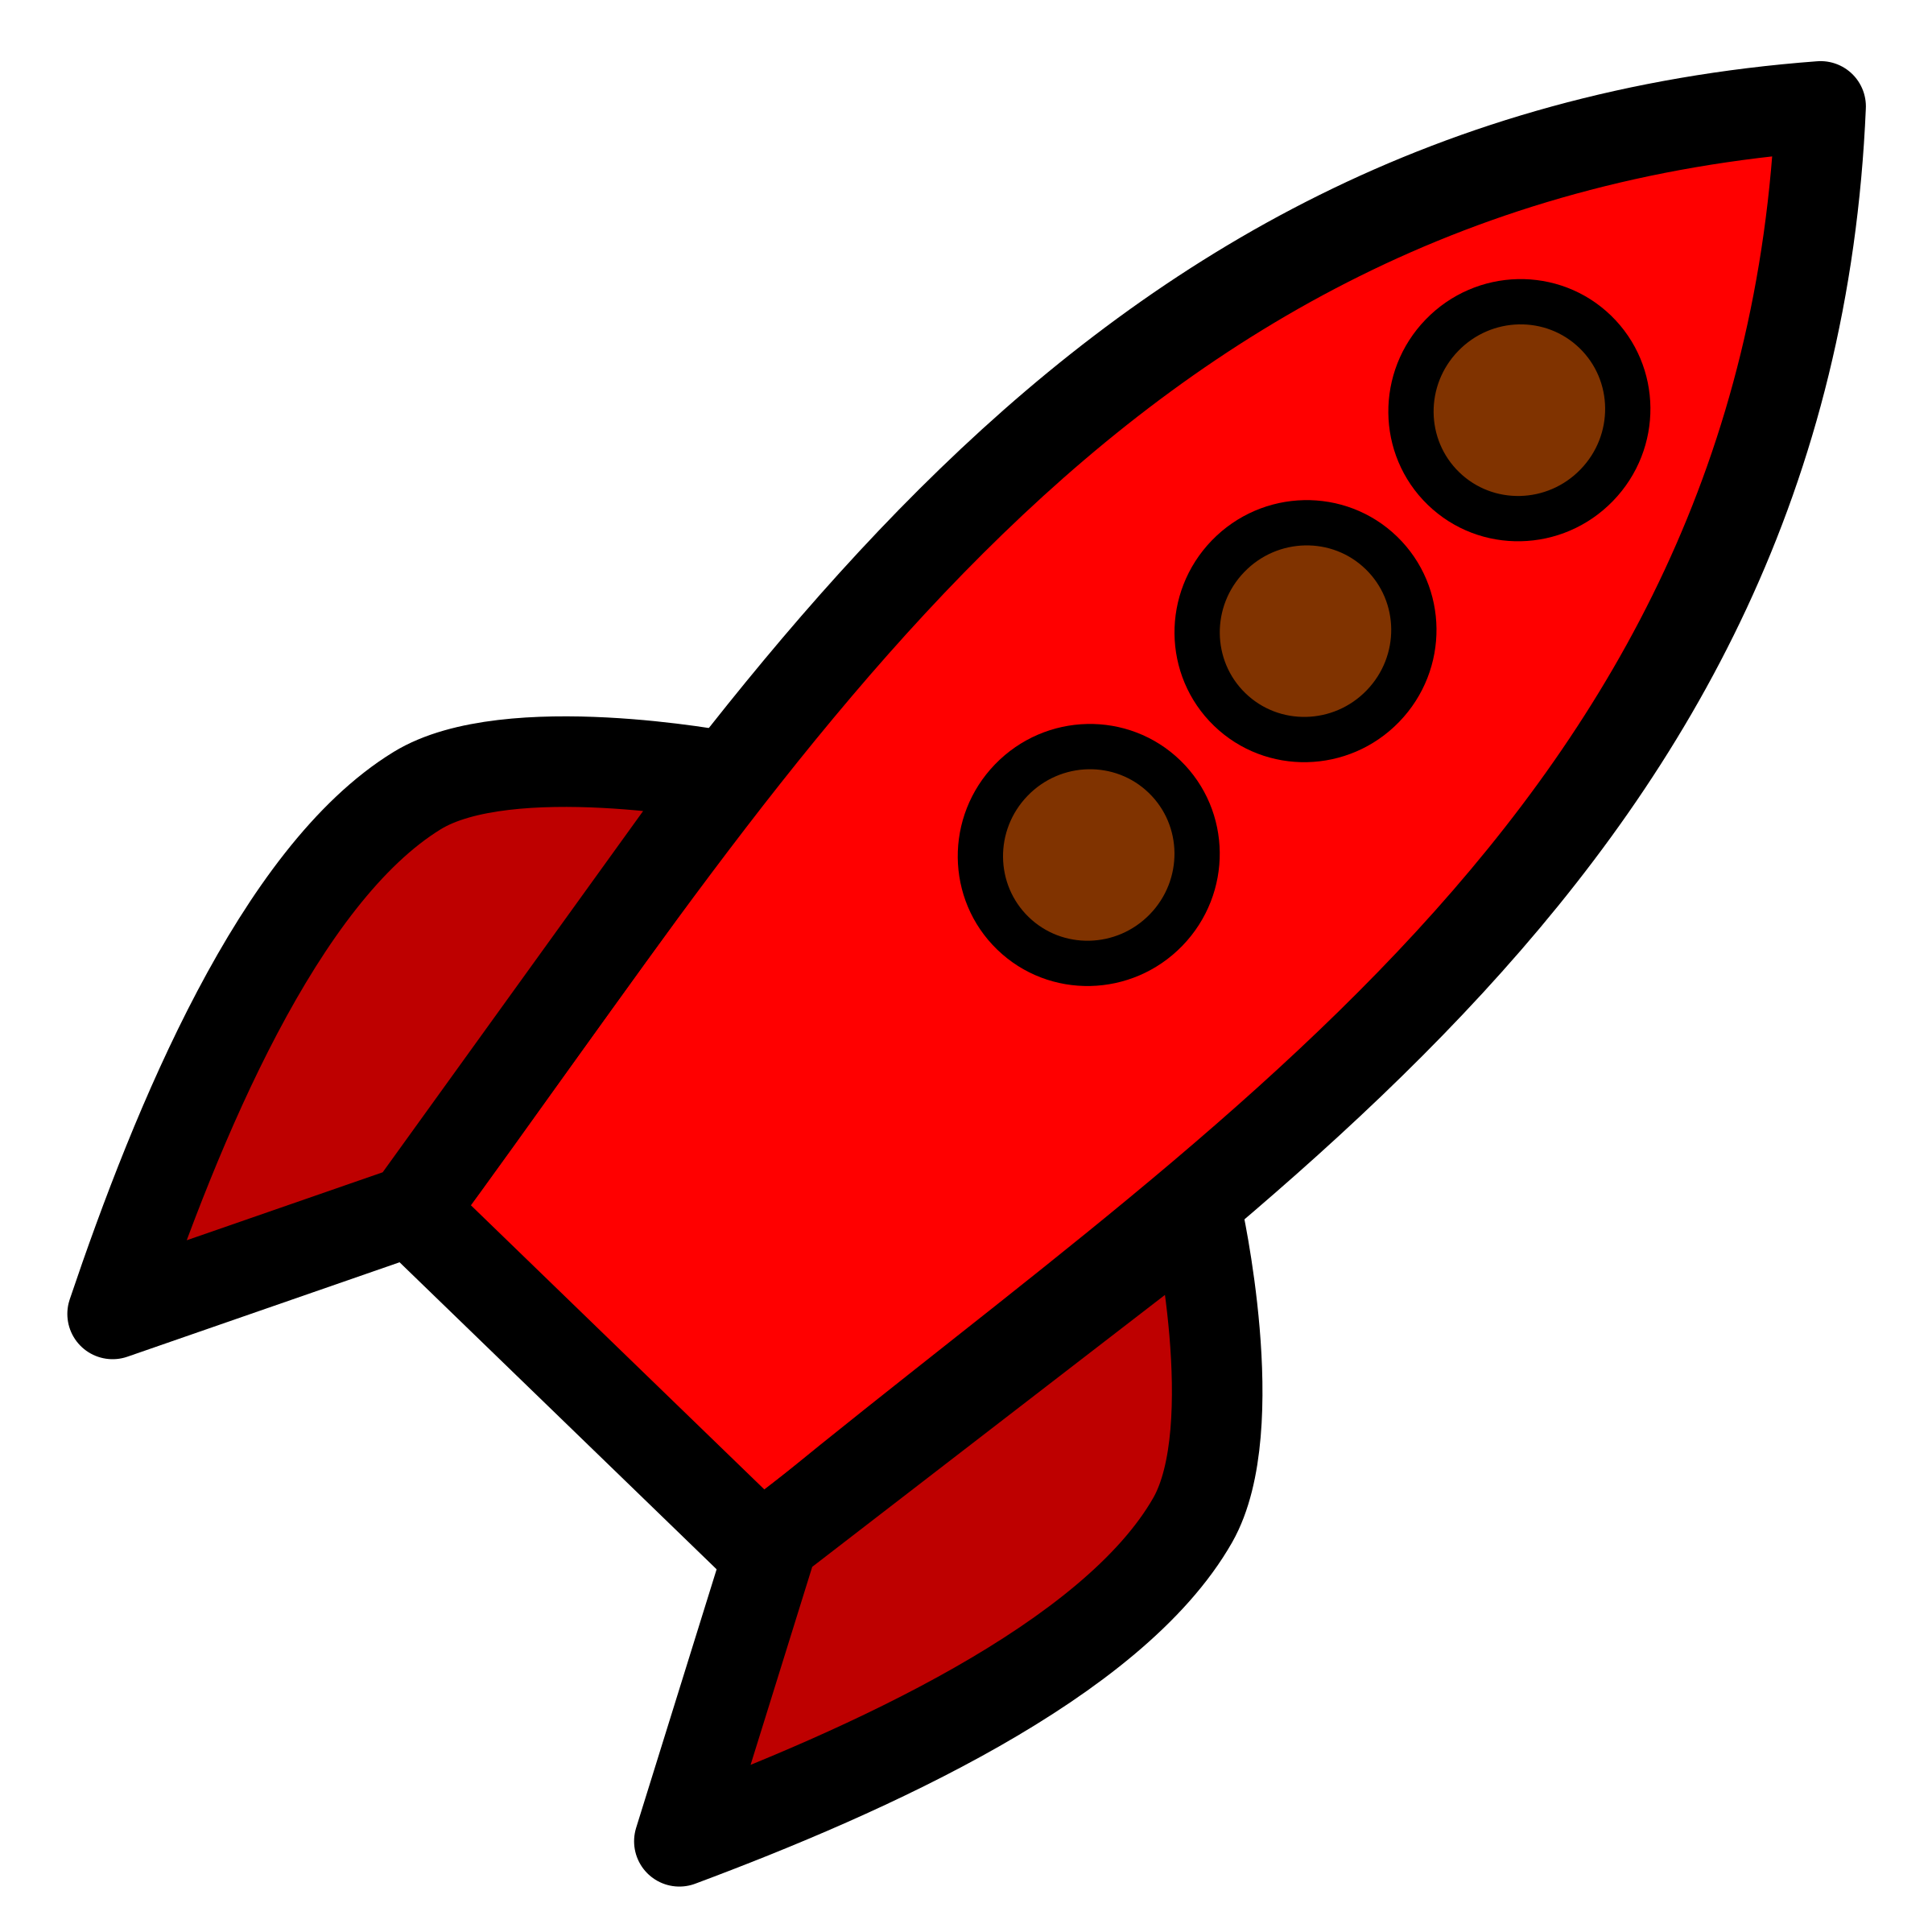 Clipart rocket red rocket. Big image png